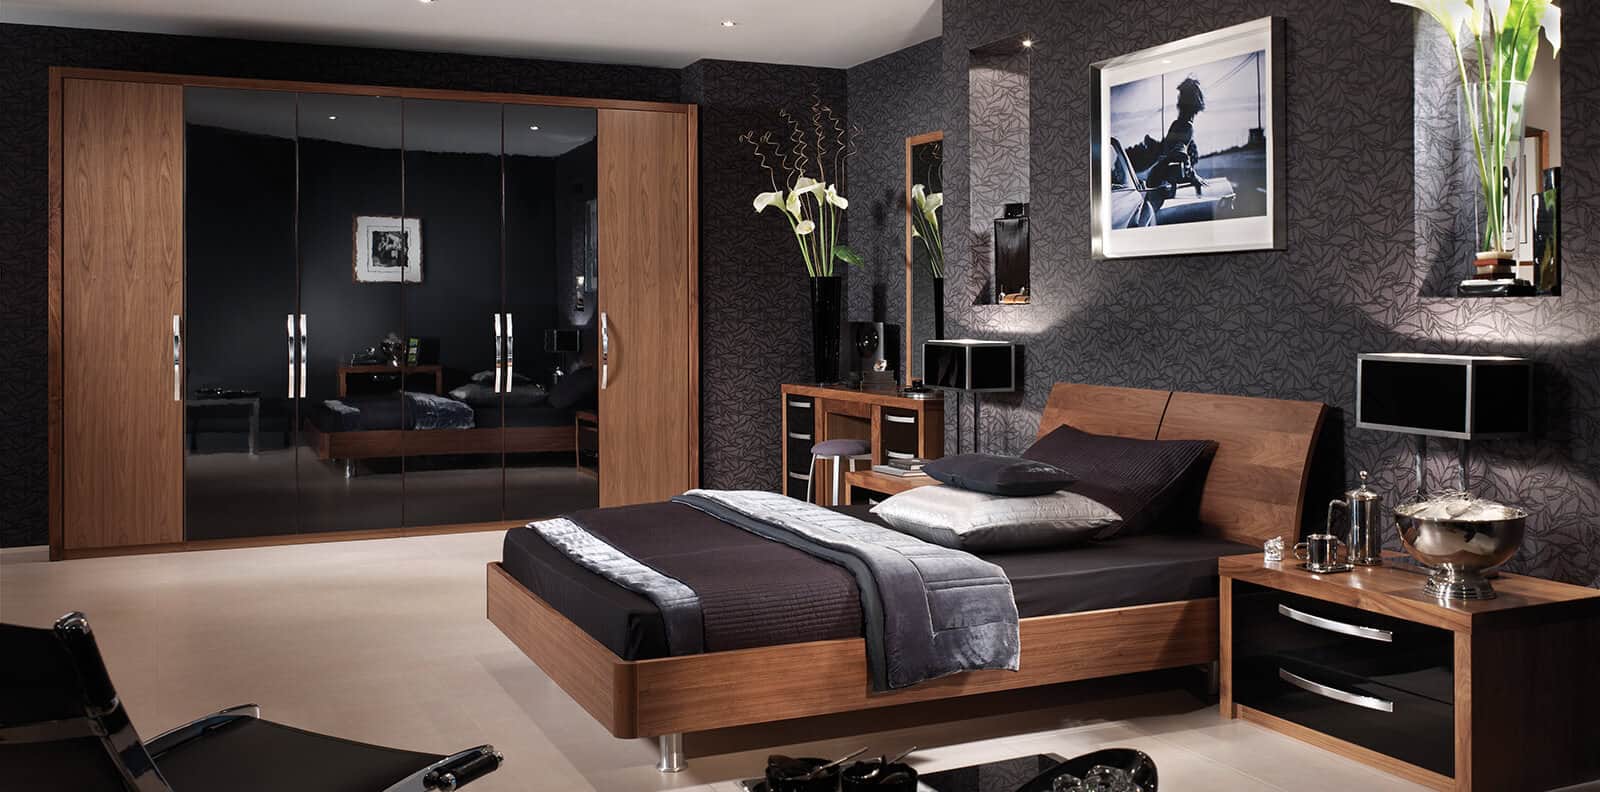 capri bedroom furniture reviews